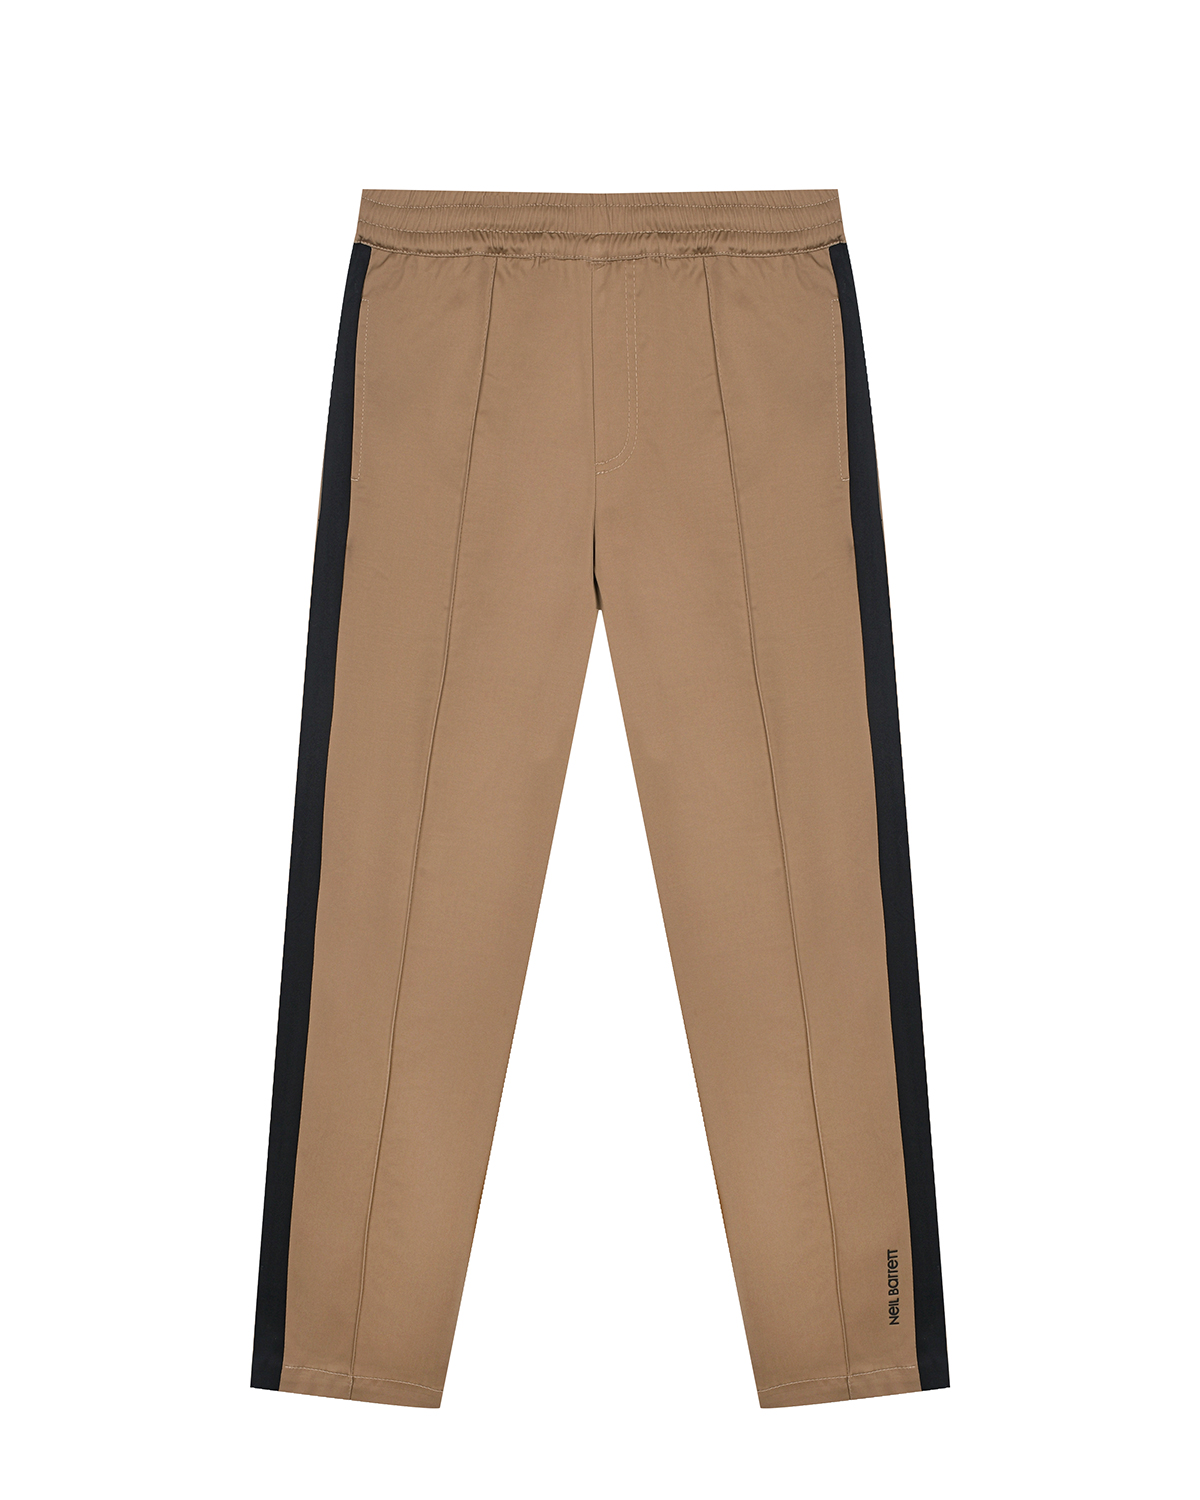 Коричневые брюки с черными лампасами Neil Barrett, размер 140, цвет коричневый